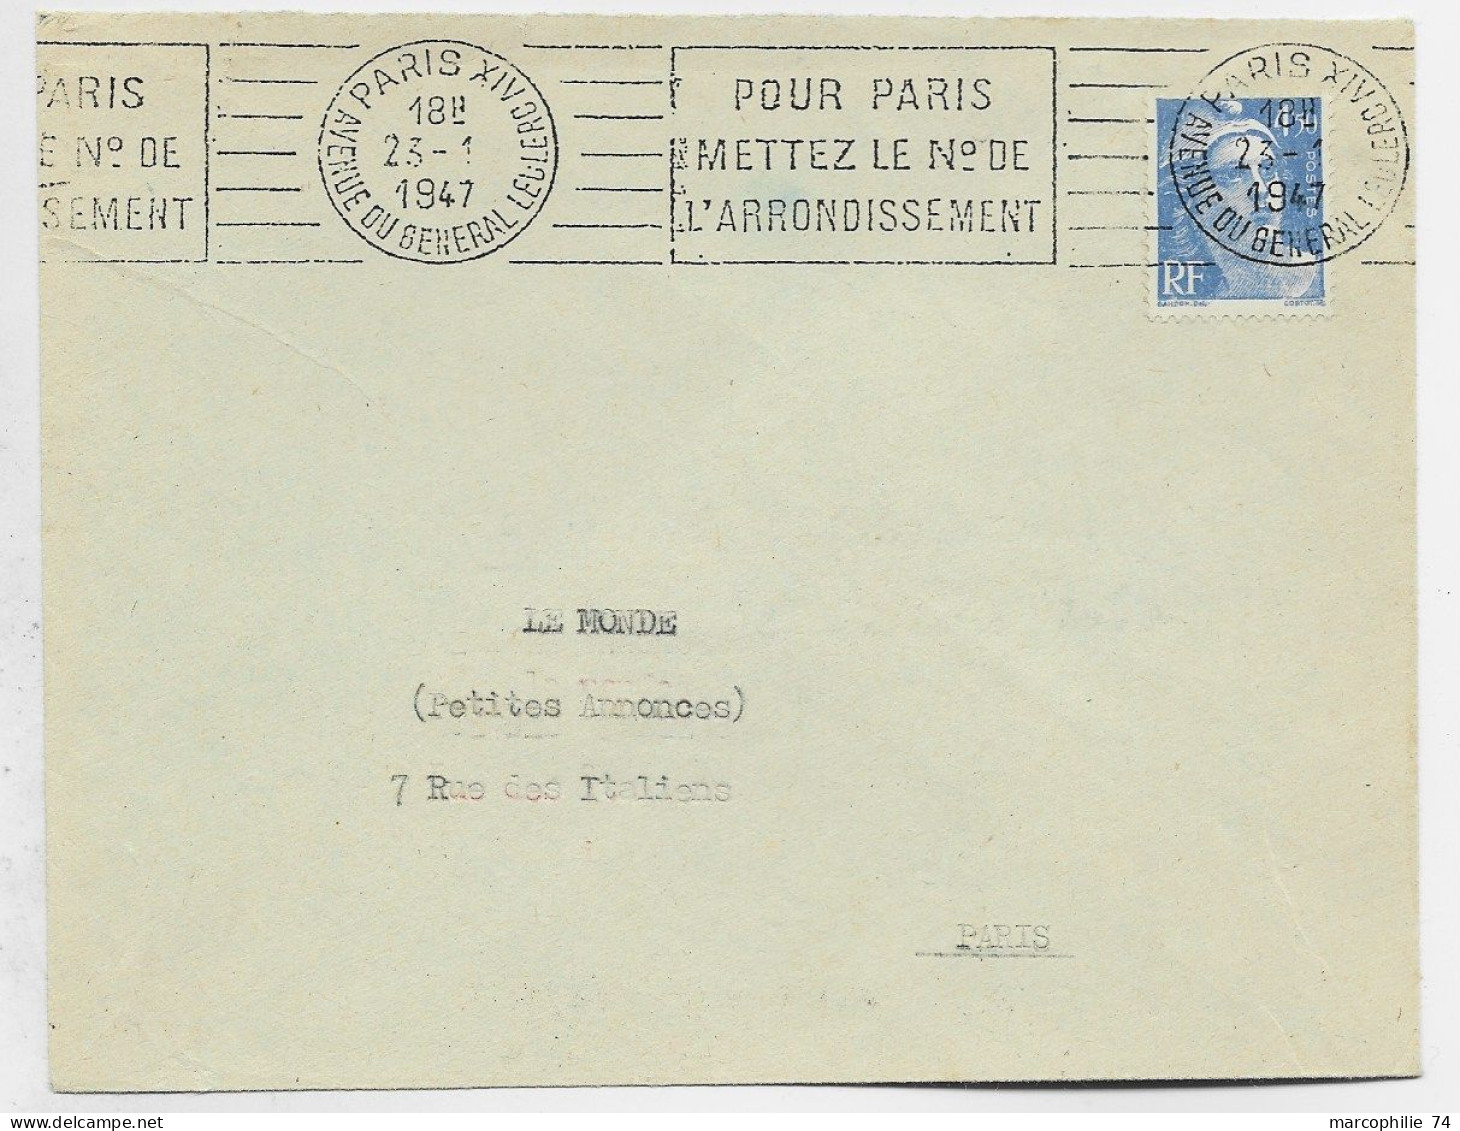 GANDON 4FR50 SEUL LETTRE MANQUE UN RABAT  MEC PARIS XIV 23.1.1947 1ER JOUR DU TIMBRE - 1945-54 Marianne De Gandon